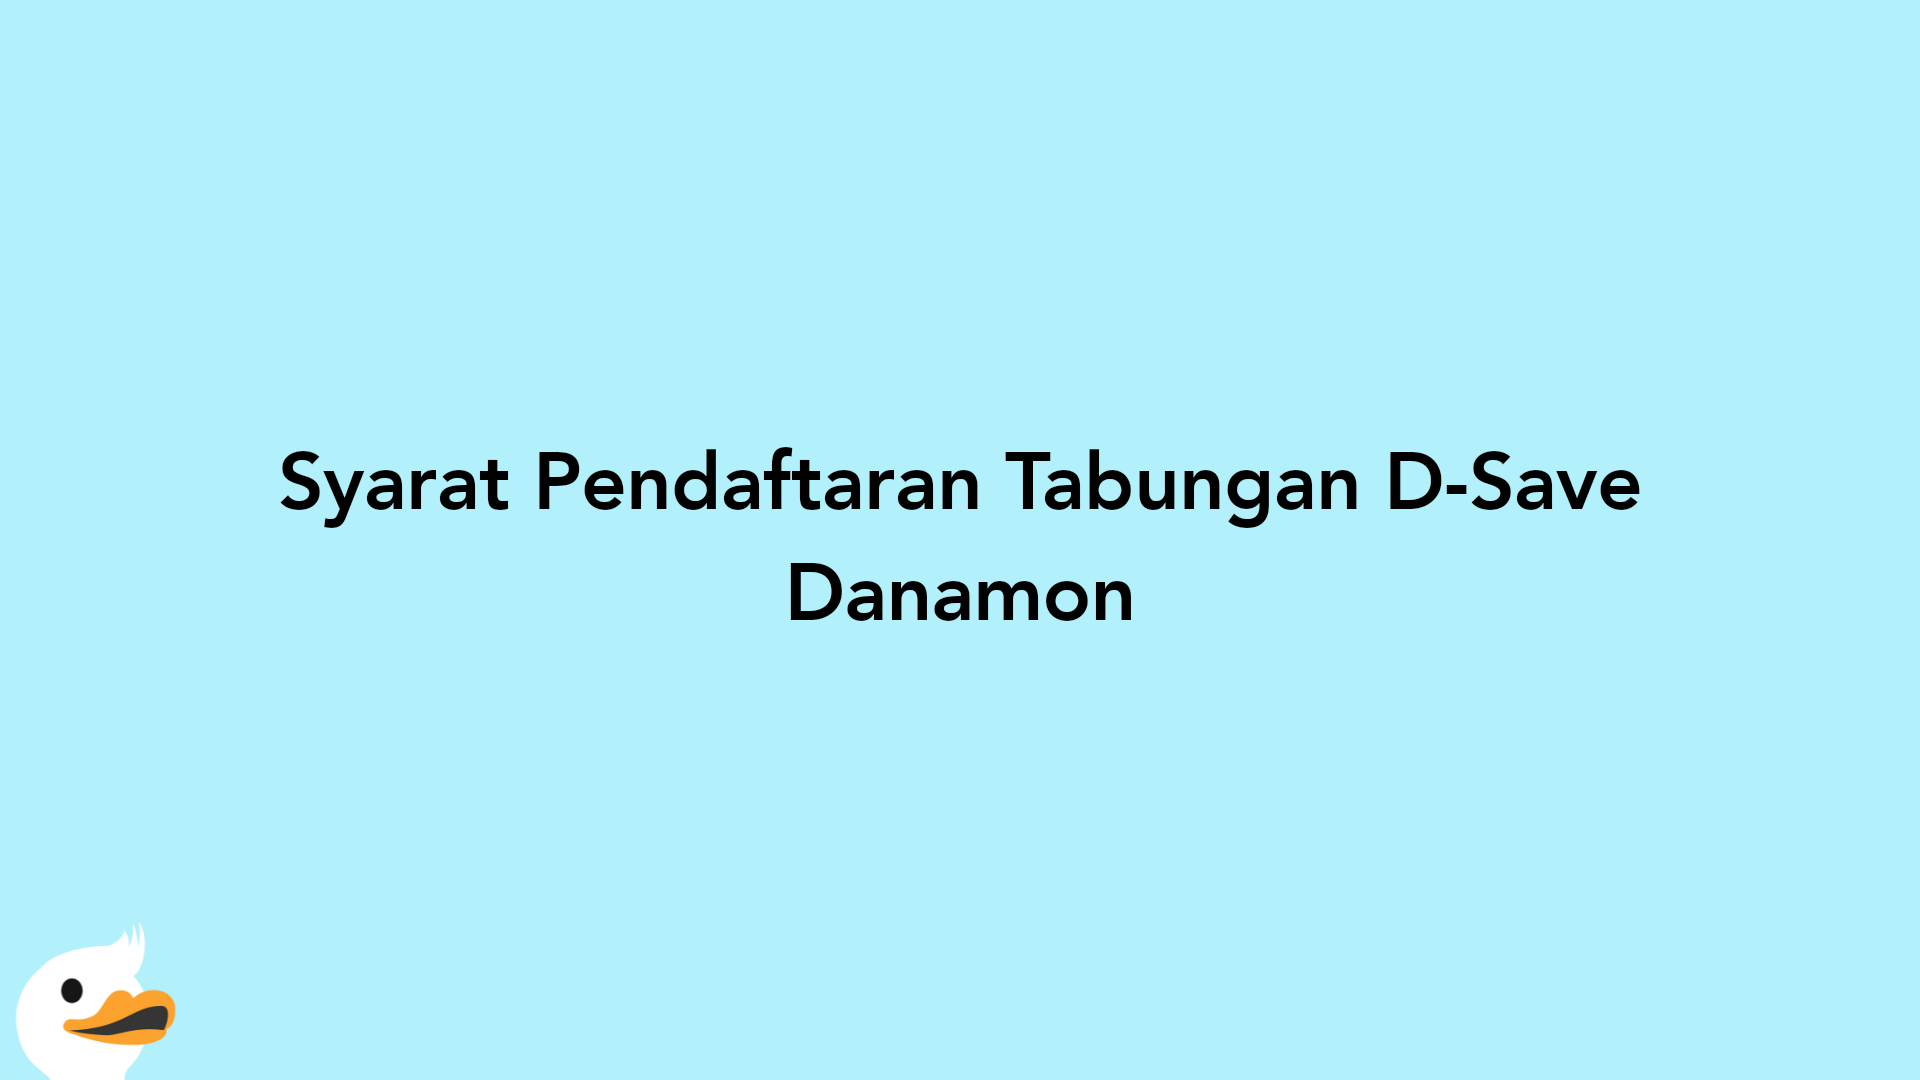 Syarat Pendaftaran Tabungan D-Save Danamon